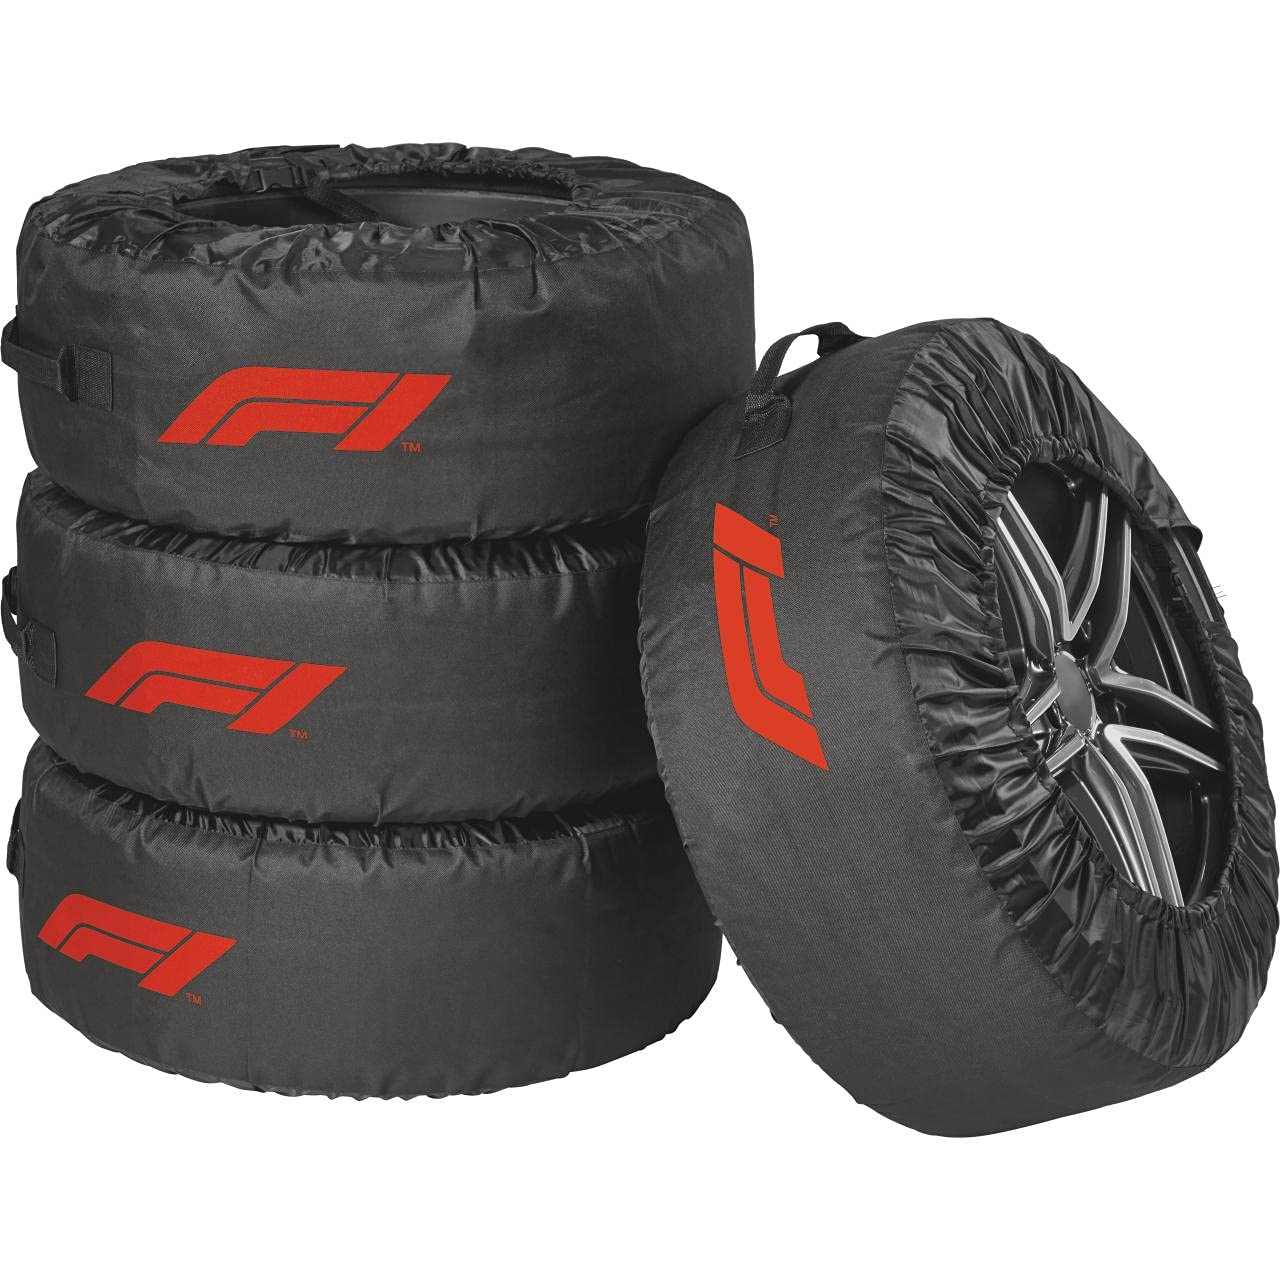 Formula 1 Reifentaschen-Set, Reifenschutzhülle, 4-teilig, wasserabweisend, waschbar, schwarz-rot, für sauberen Transport und sichere Aufbewahrung von Formula 1